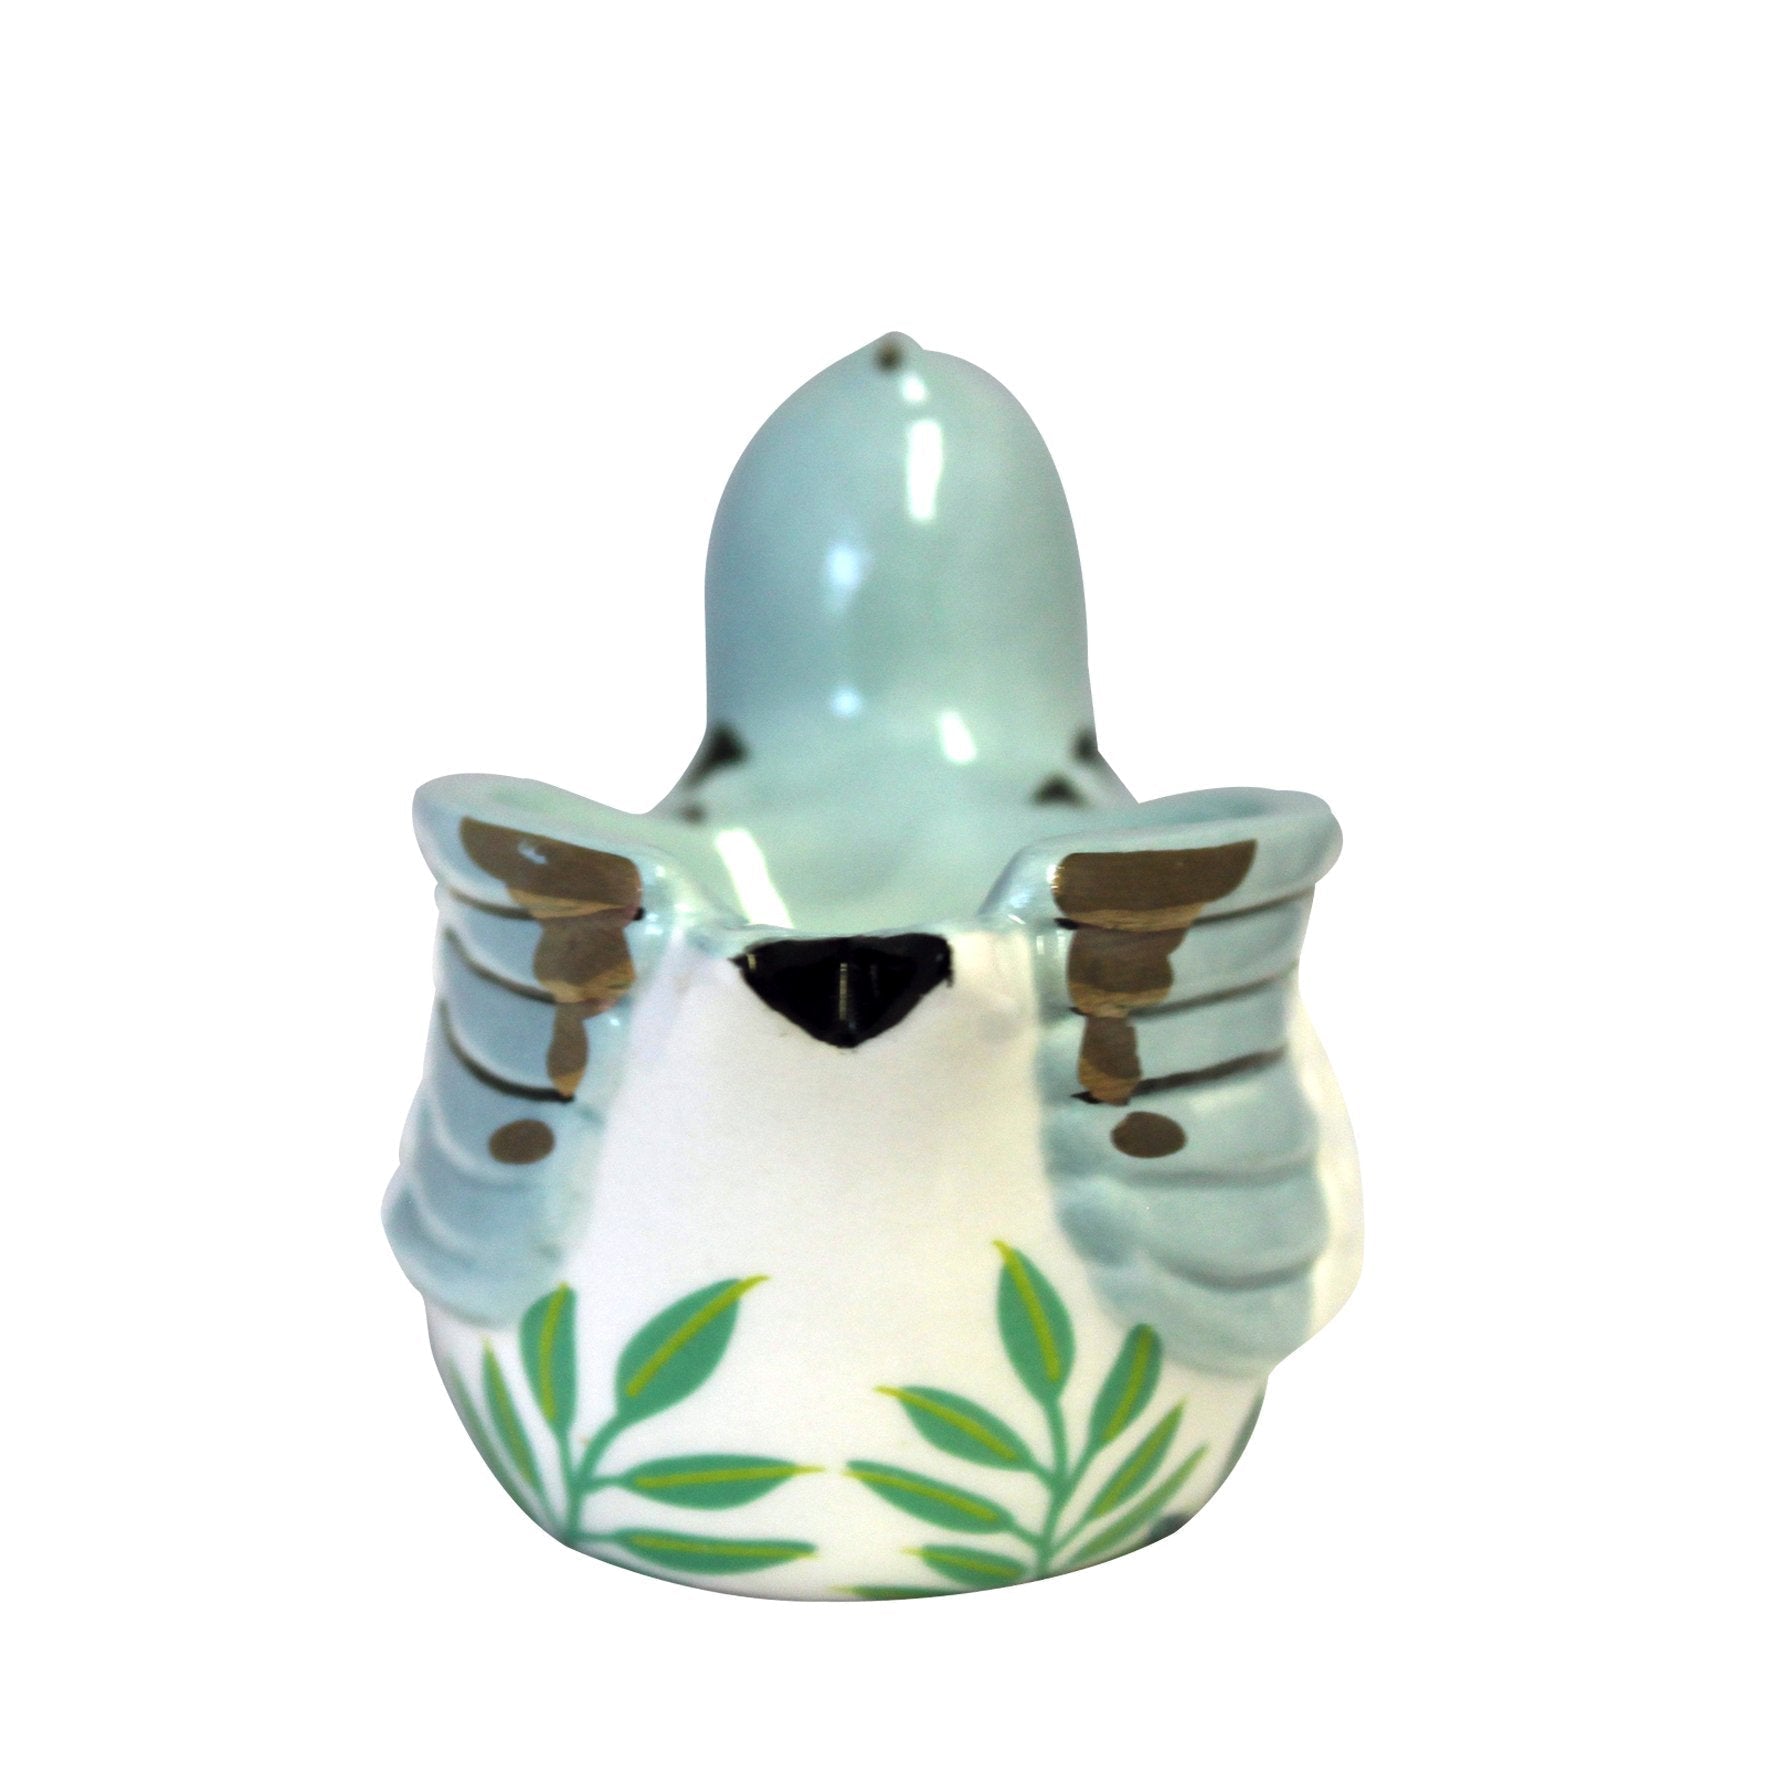 Secret Garden Bird Egg Cup